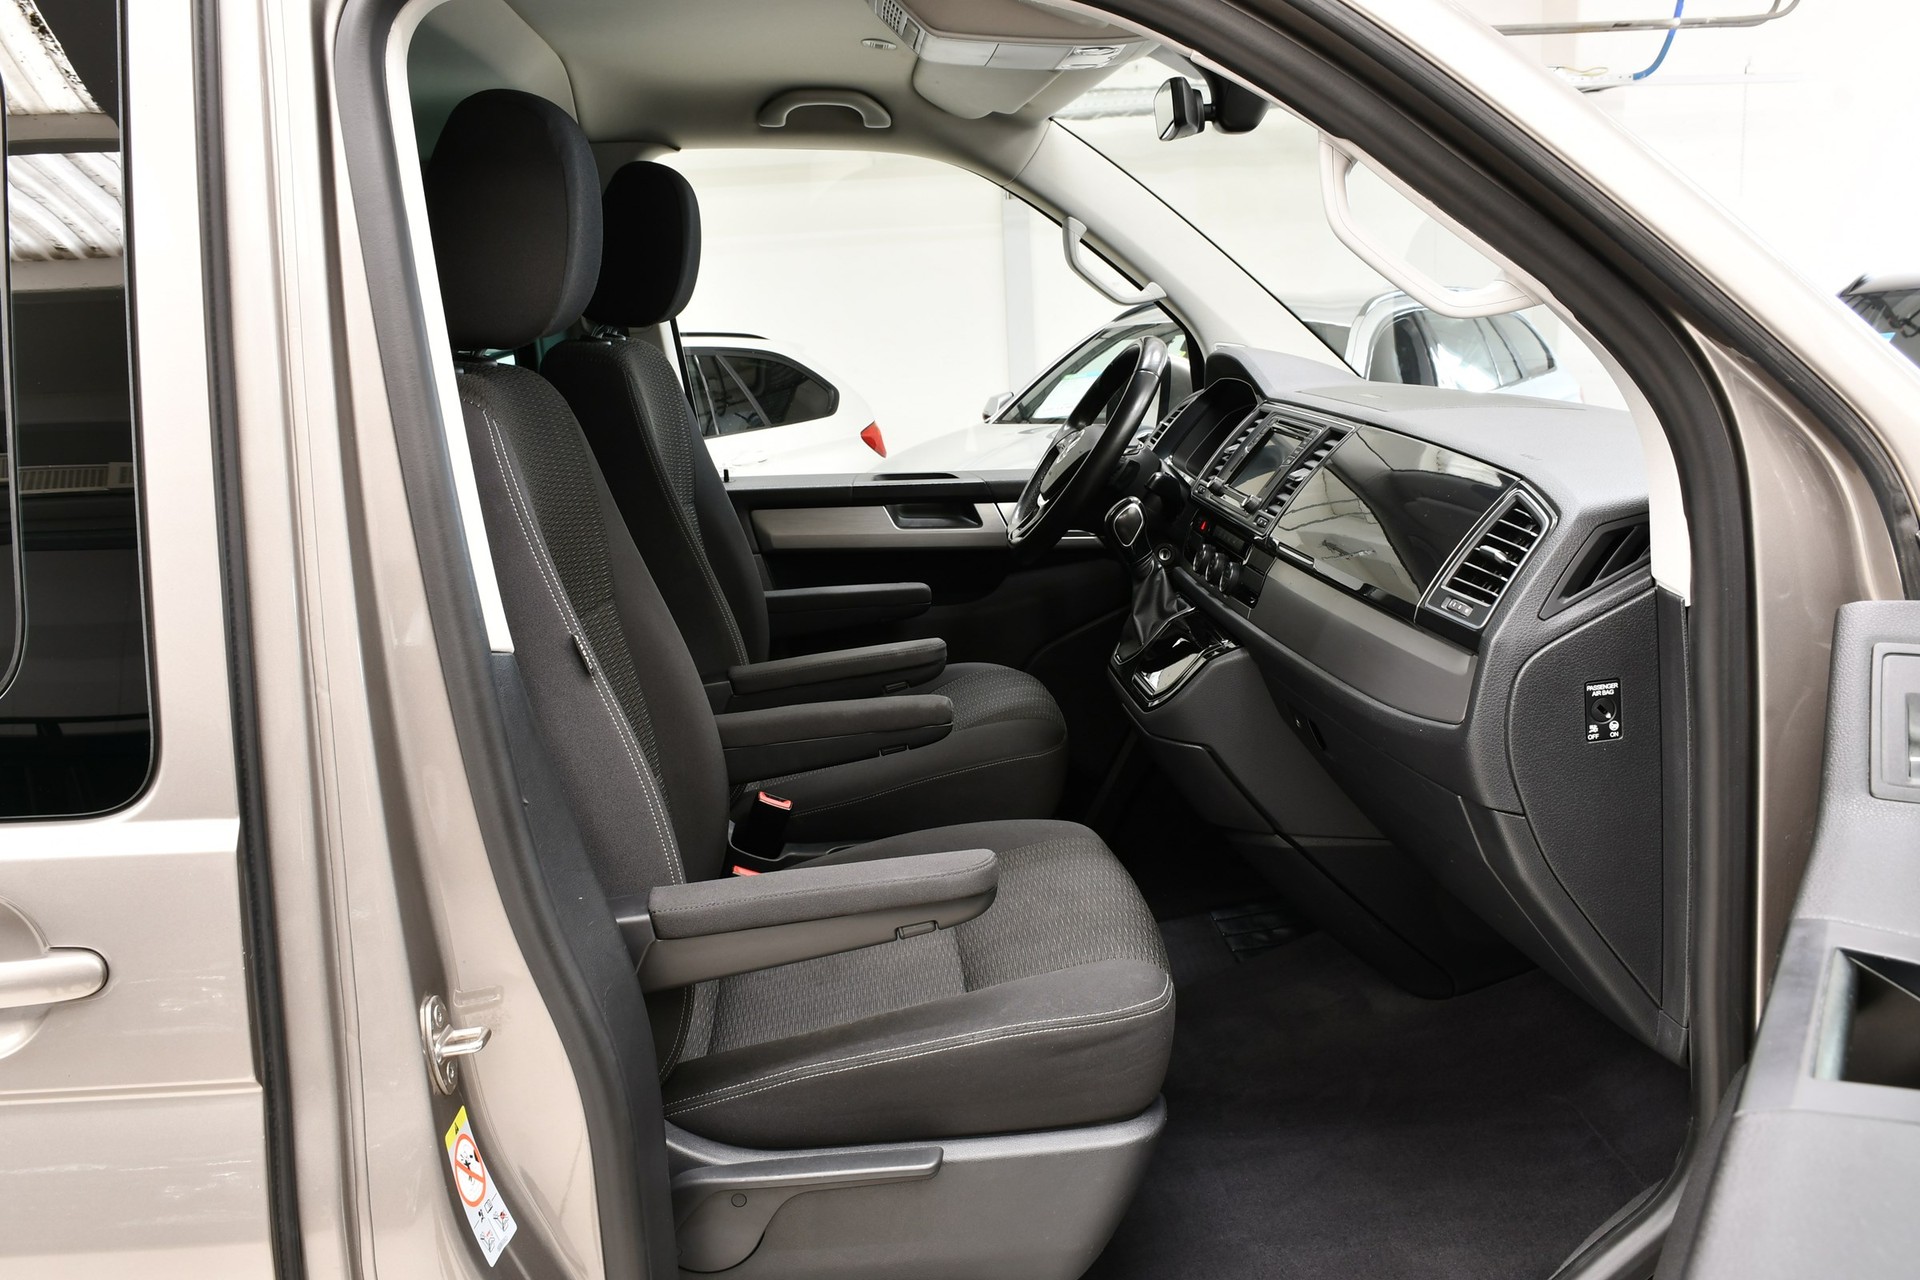 VW T6 Multivan 2.0 TDI 150 Comfortline DSG 170000 km pour 34200 CHF -  acheter sur